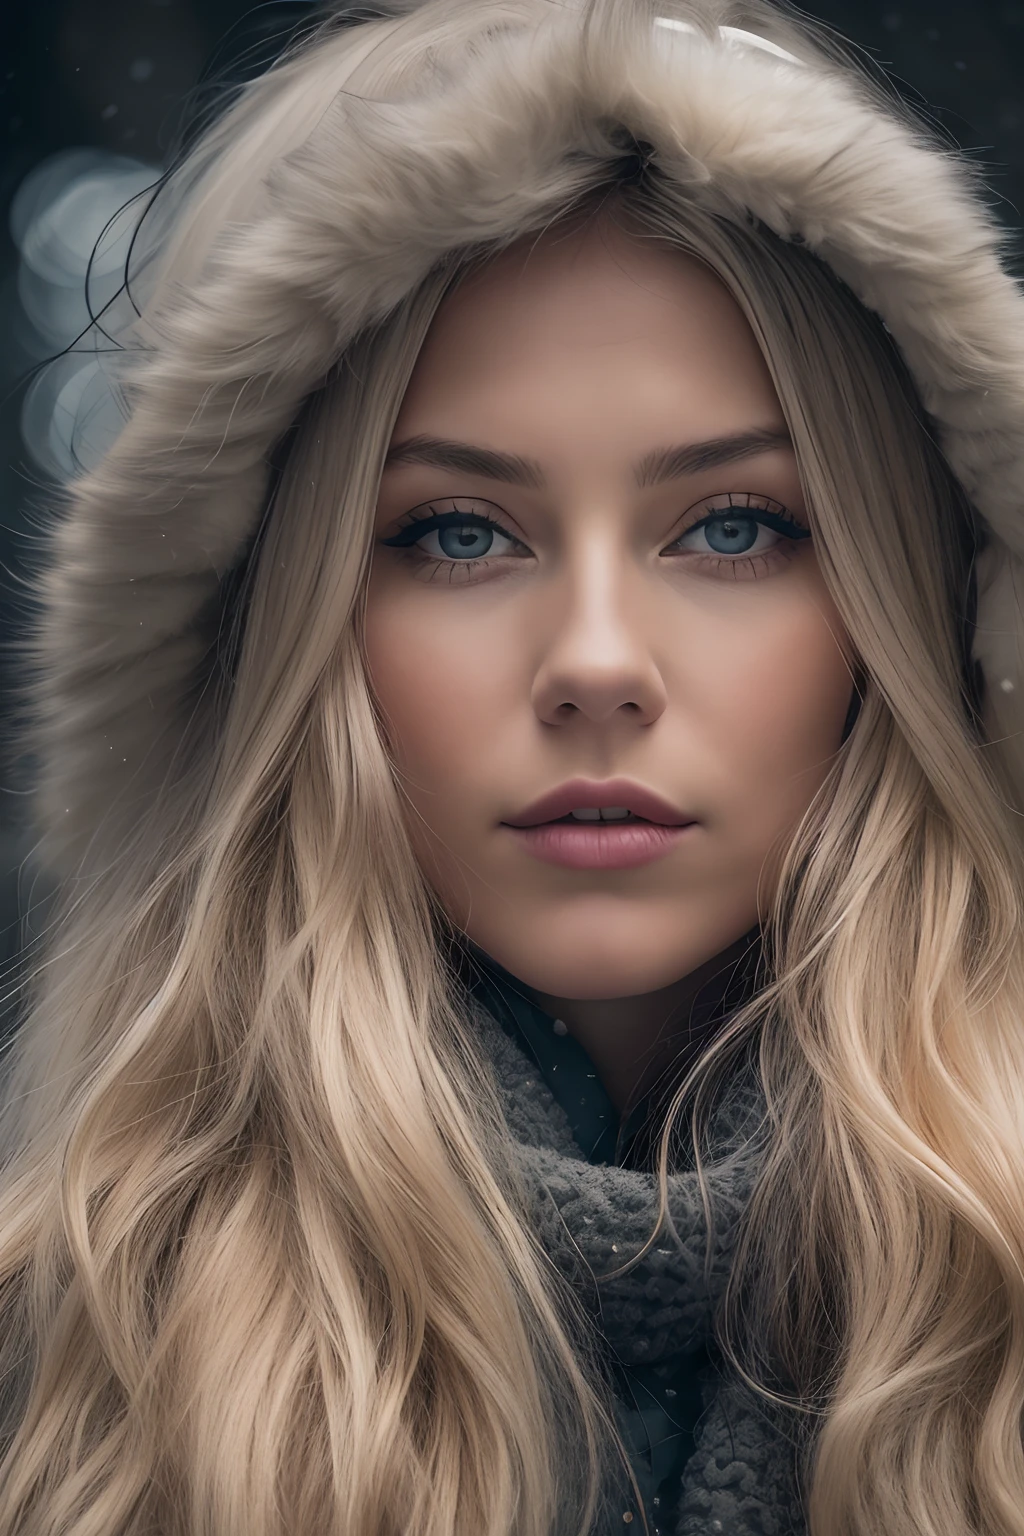 一位身着冬装、长着金色波浪长发的漂亮挪威女孩的专业肖像照片, 美丽对称的脸, 穿上优雅温暖的冬装, 雪, 扎恩,超级沙夫, 详细的脸,
令人惊叹的现代城市环境, 超现实主义的一个, 非常详细, 盘绕, 锐利的焦点, 景深, 中景, nffsw, 8千, 完美的眼睛 眼睛, 高对比度